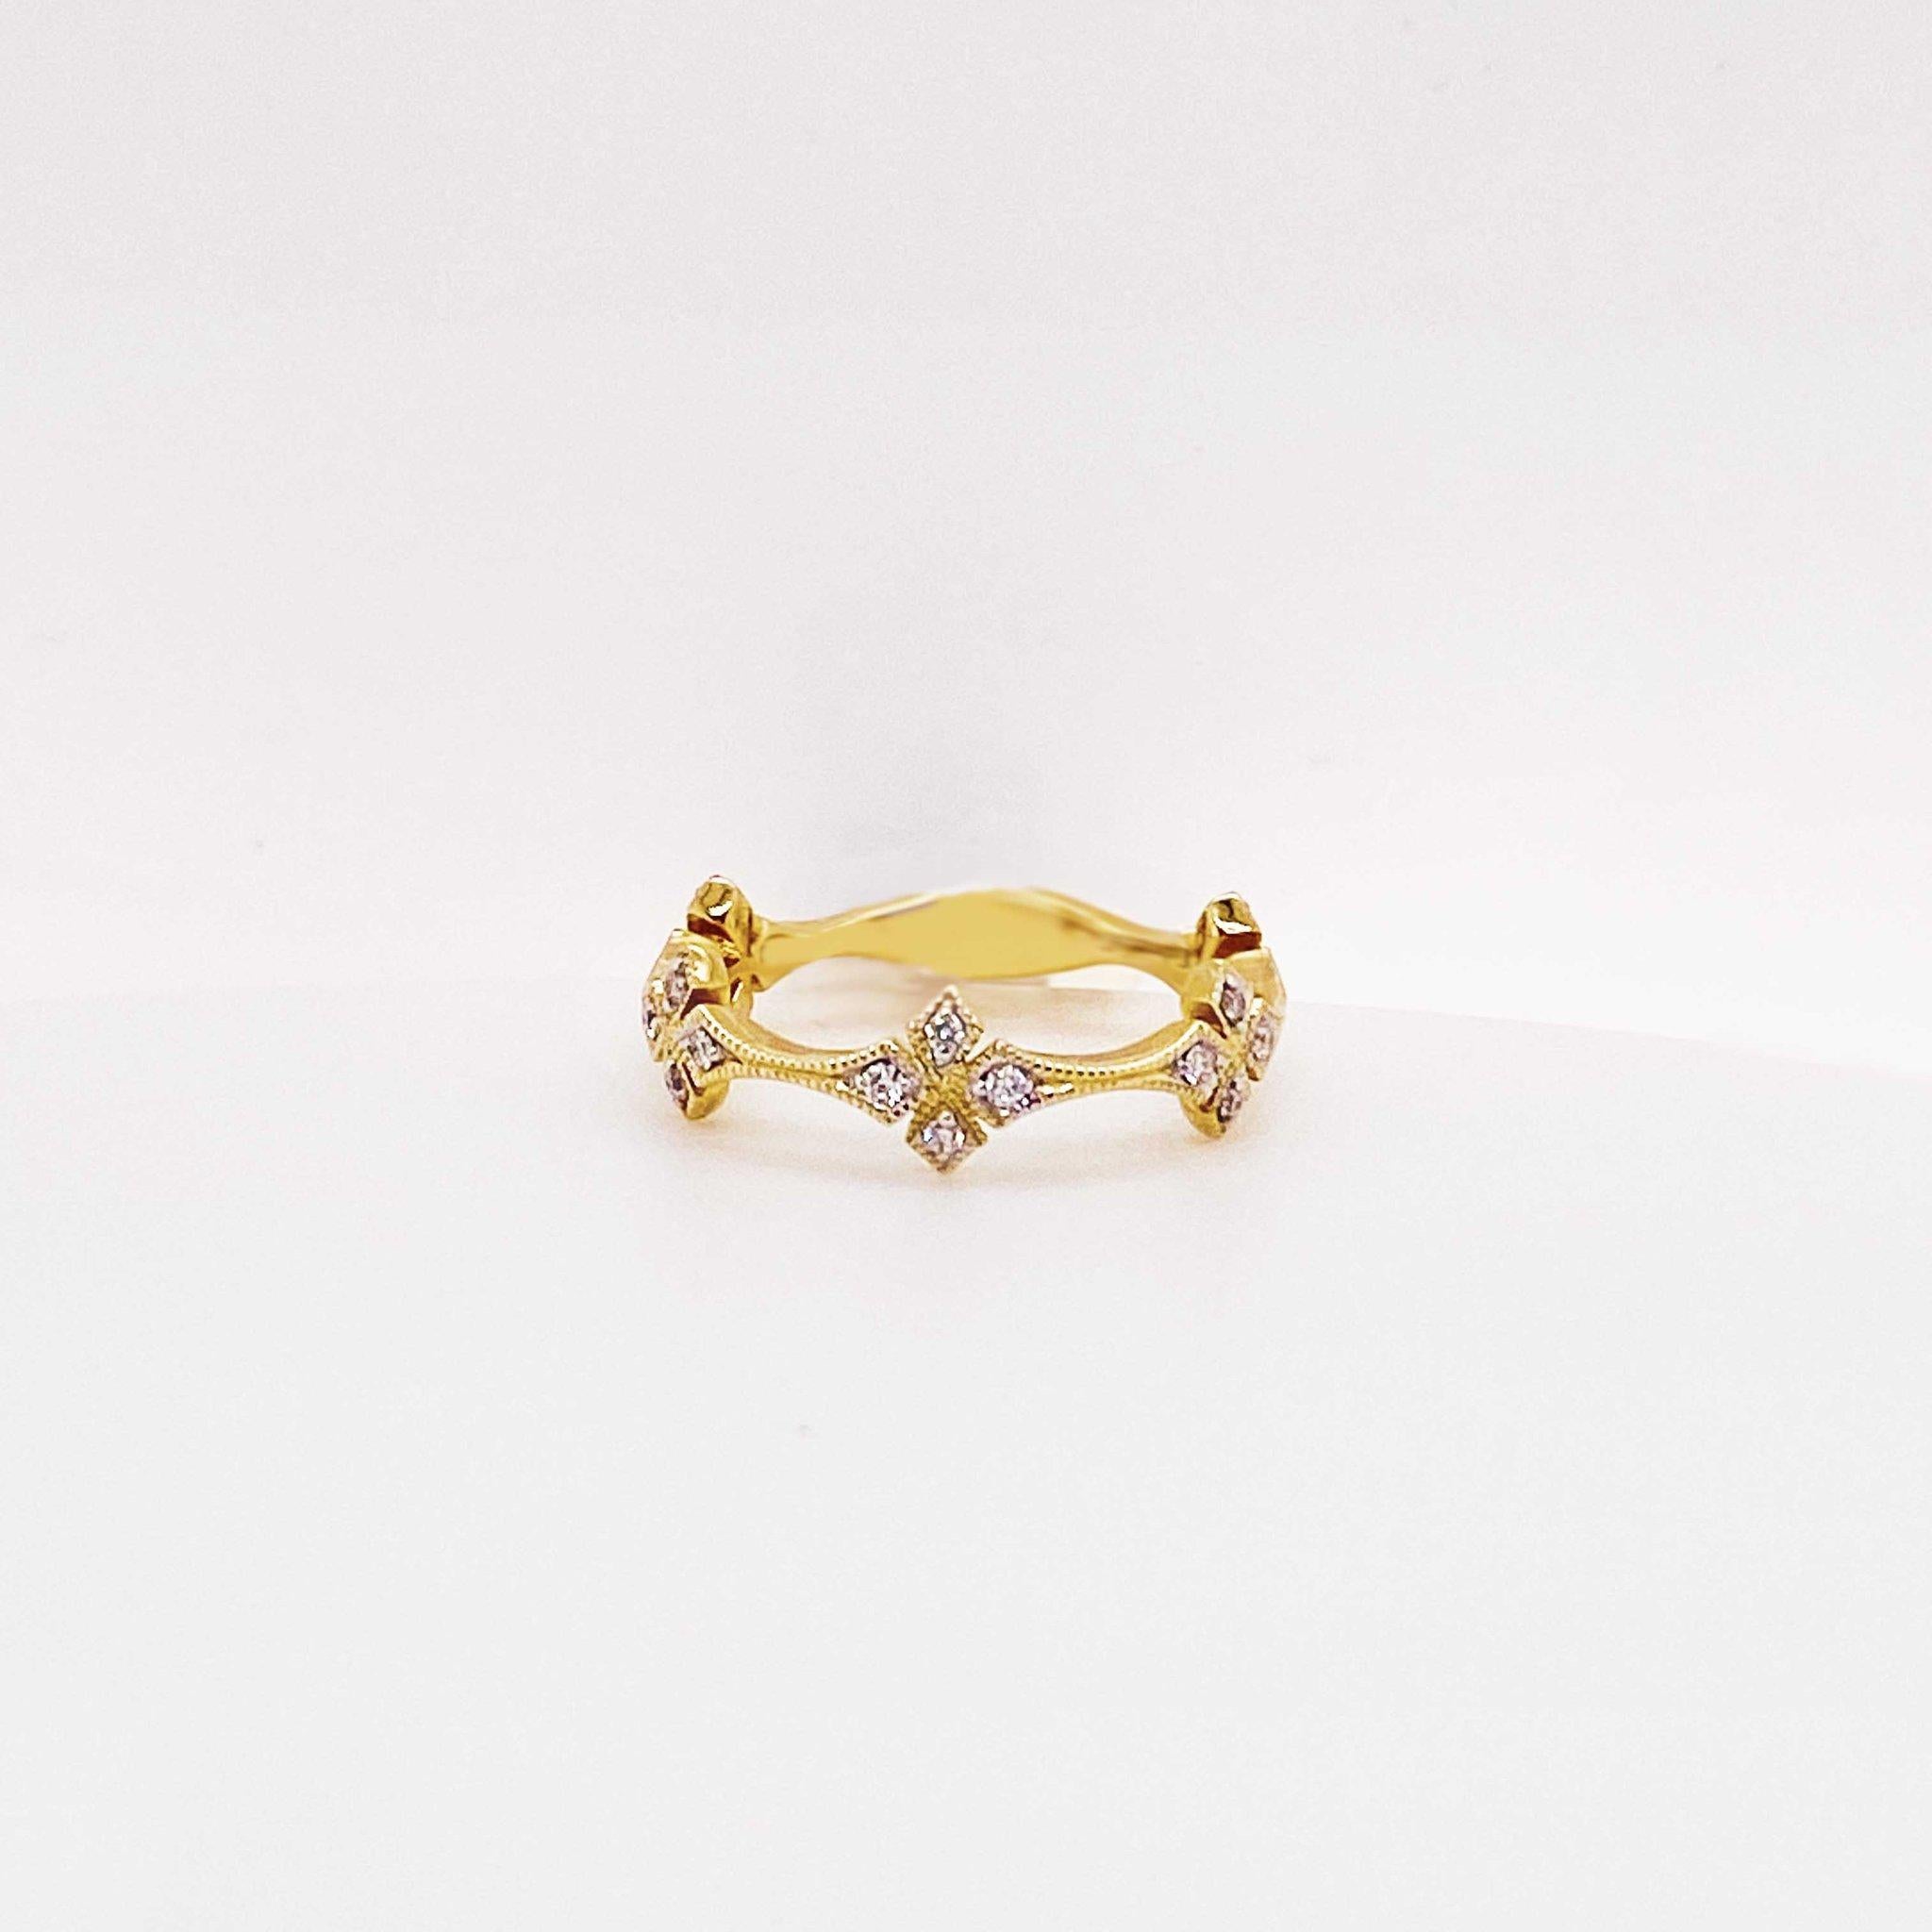 Dieses lustige, modische Diamant-Kleeband ist ein kühnes und atemberaubendes Design! Das Diamantband aus 14 Karat Gelbgold hat ein Kleeblattdesign mit Diamantkleeblättern, die zu 3/4 um das Band laufen. Das Kleeblatt hat vier Blütenblätter, die